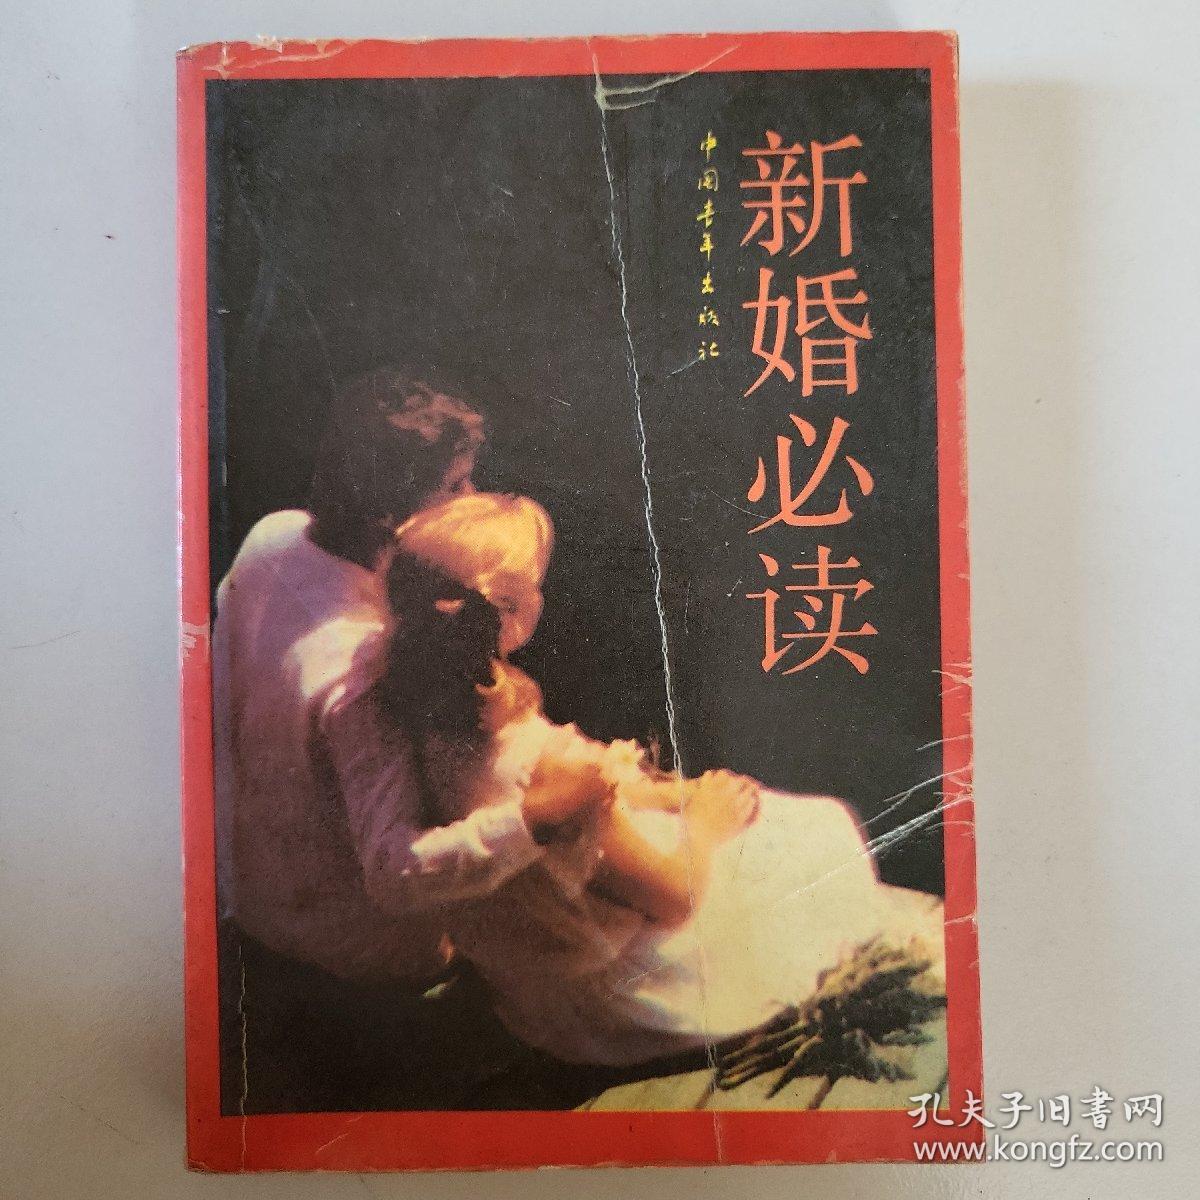 新婚必读 中国青年出版社